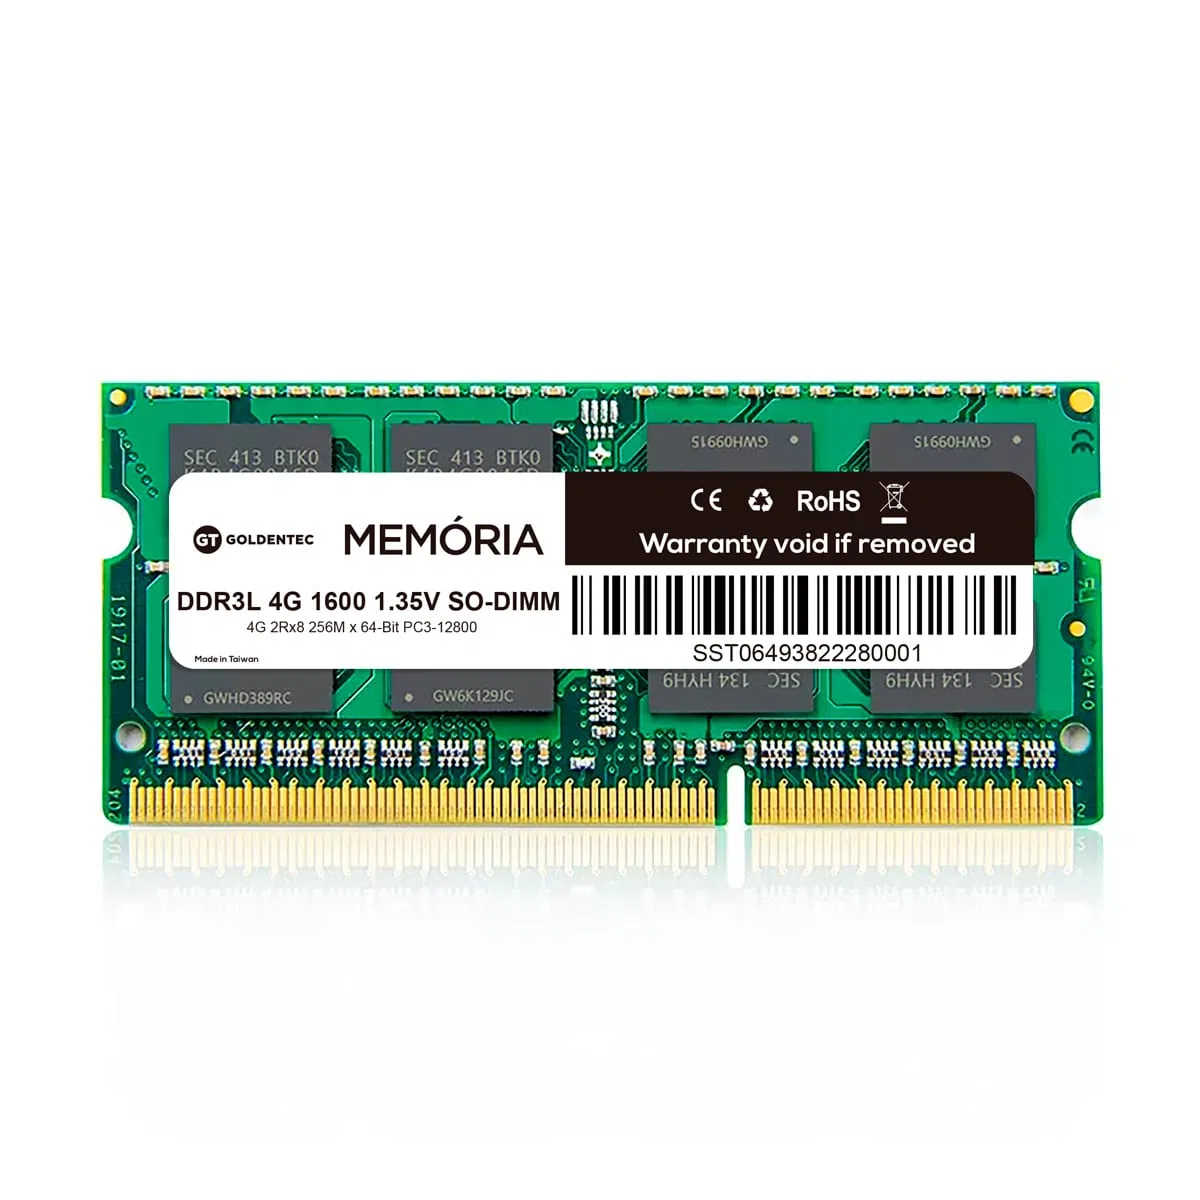 MEMORIA DDR3 GOLDENTEC 4GB 1600 DDR3L P/NOT